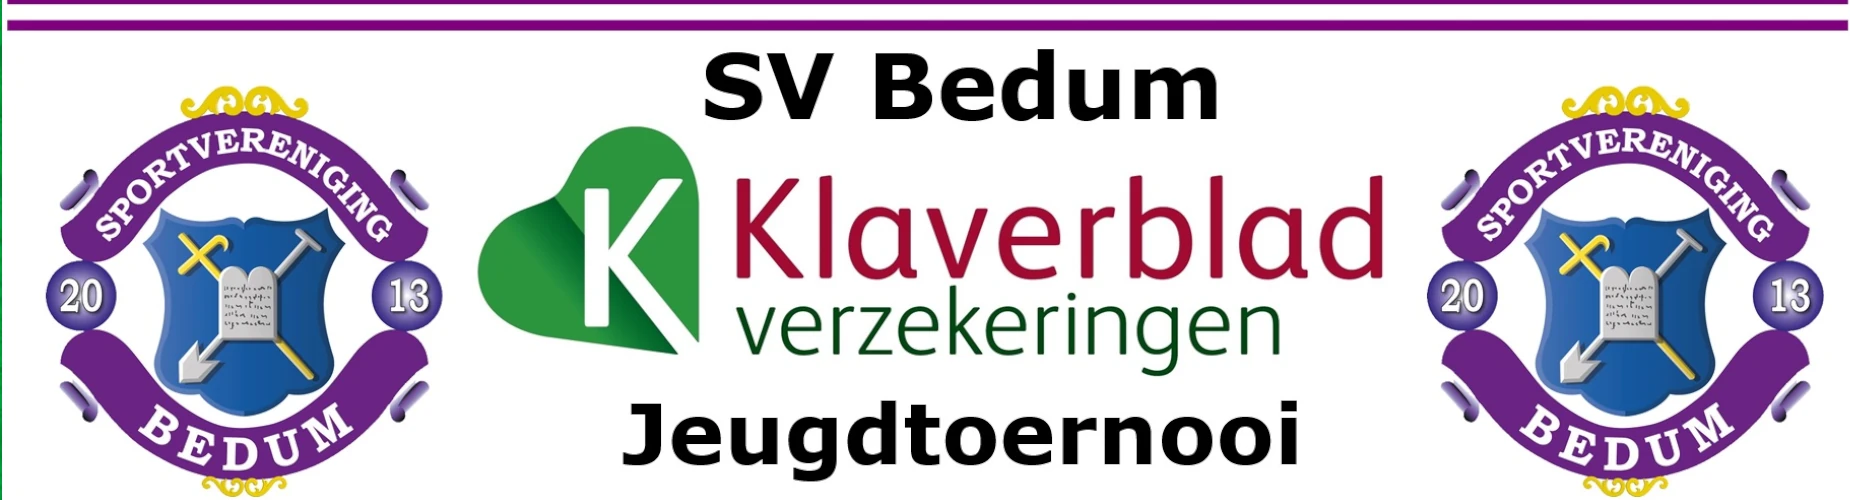 Banner - O11 - sv Bedum Klaverblad Verzekeringen Jeugdtoernooi - SV Bedum - Bedum